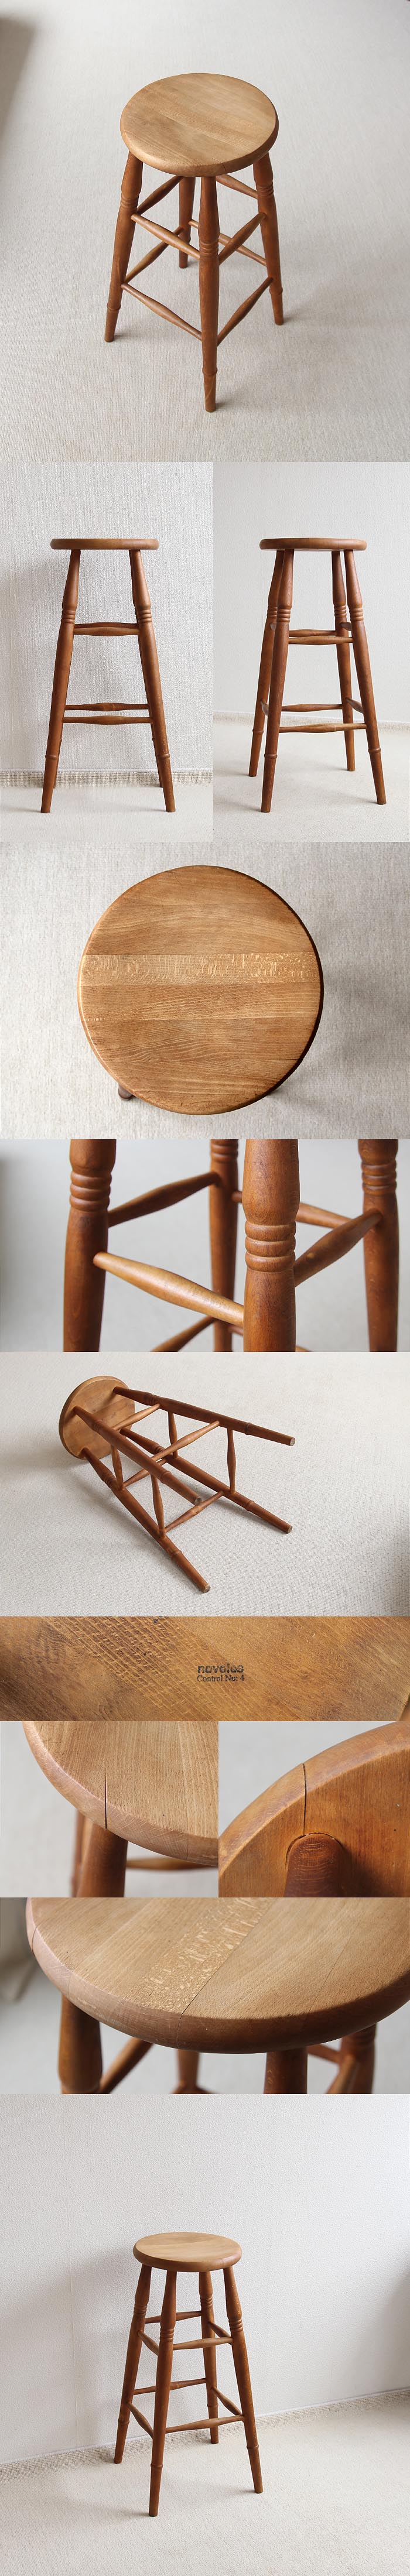 イギリス ヴィンテージ ハイスツール 木製椅子 飾り台 英国 家具「花台にも」V-452